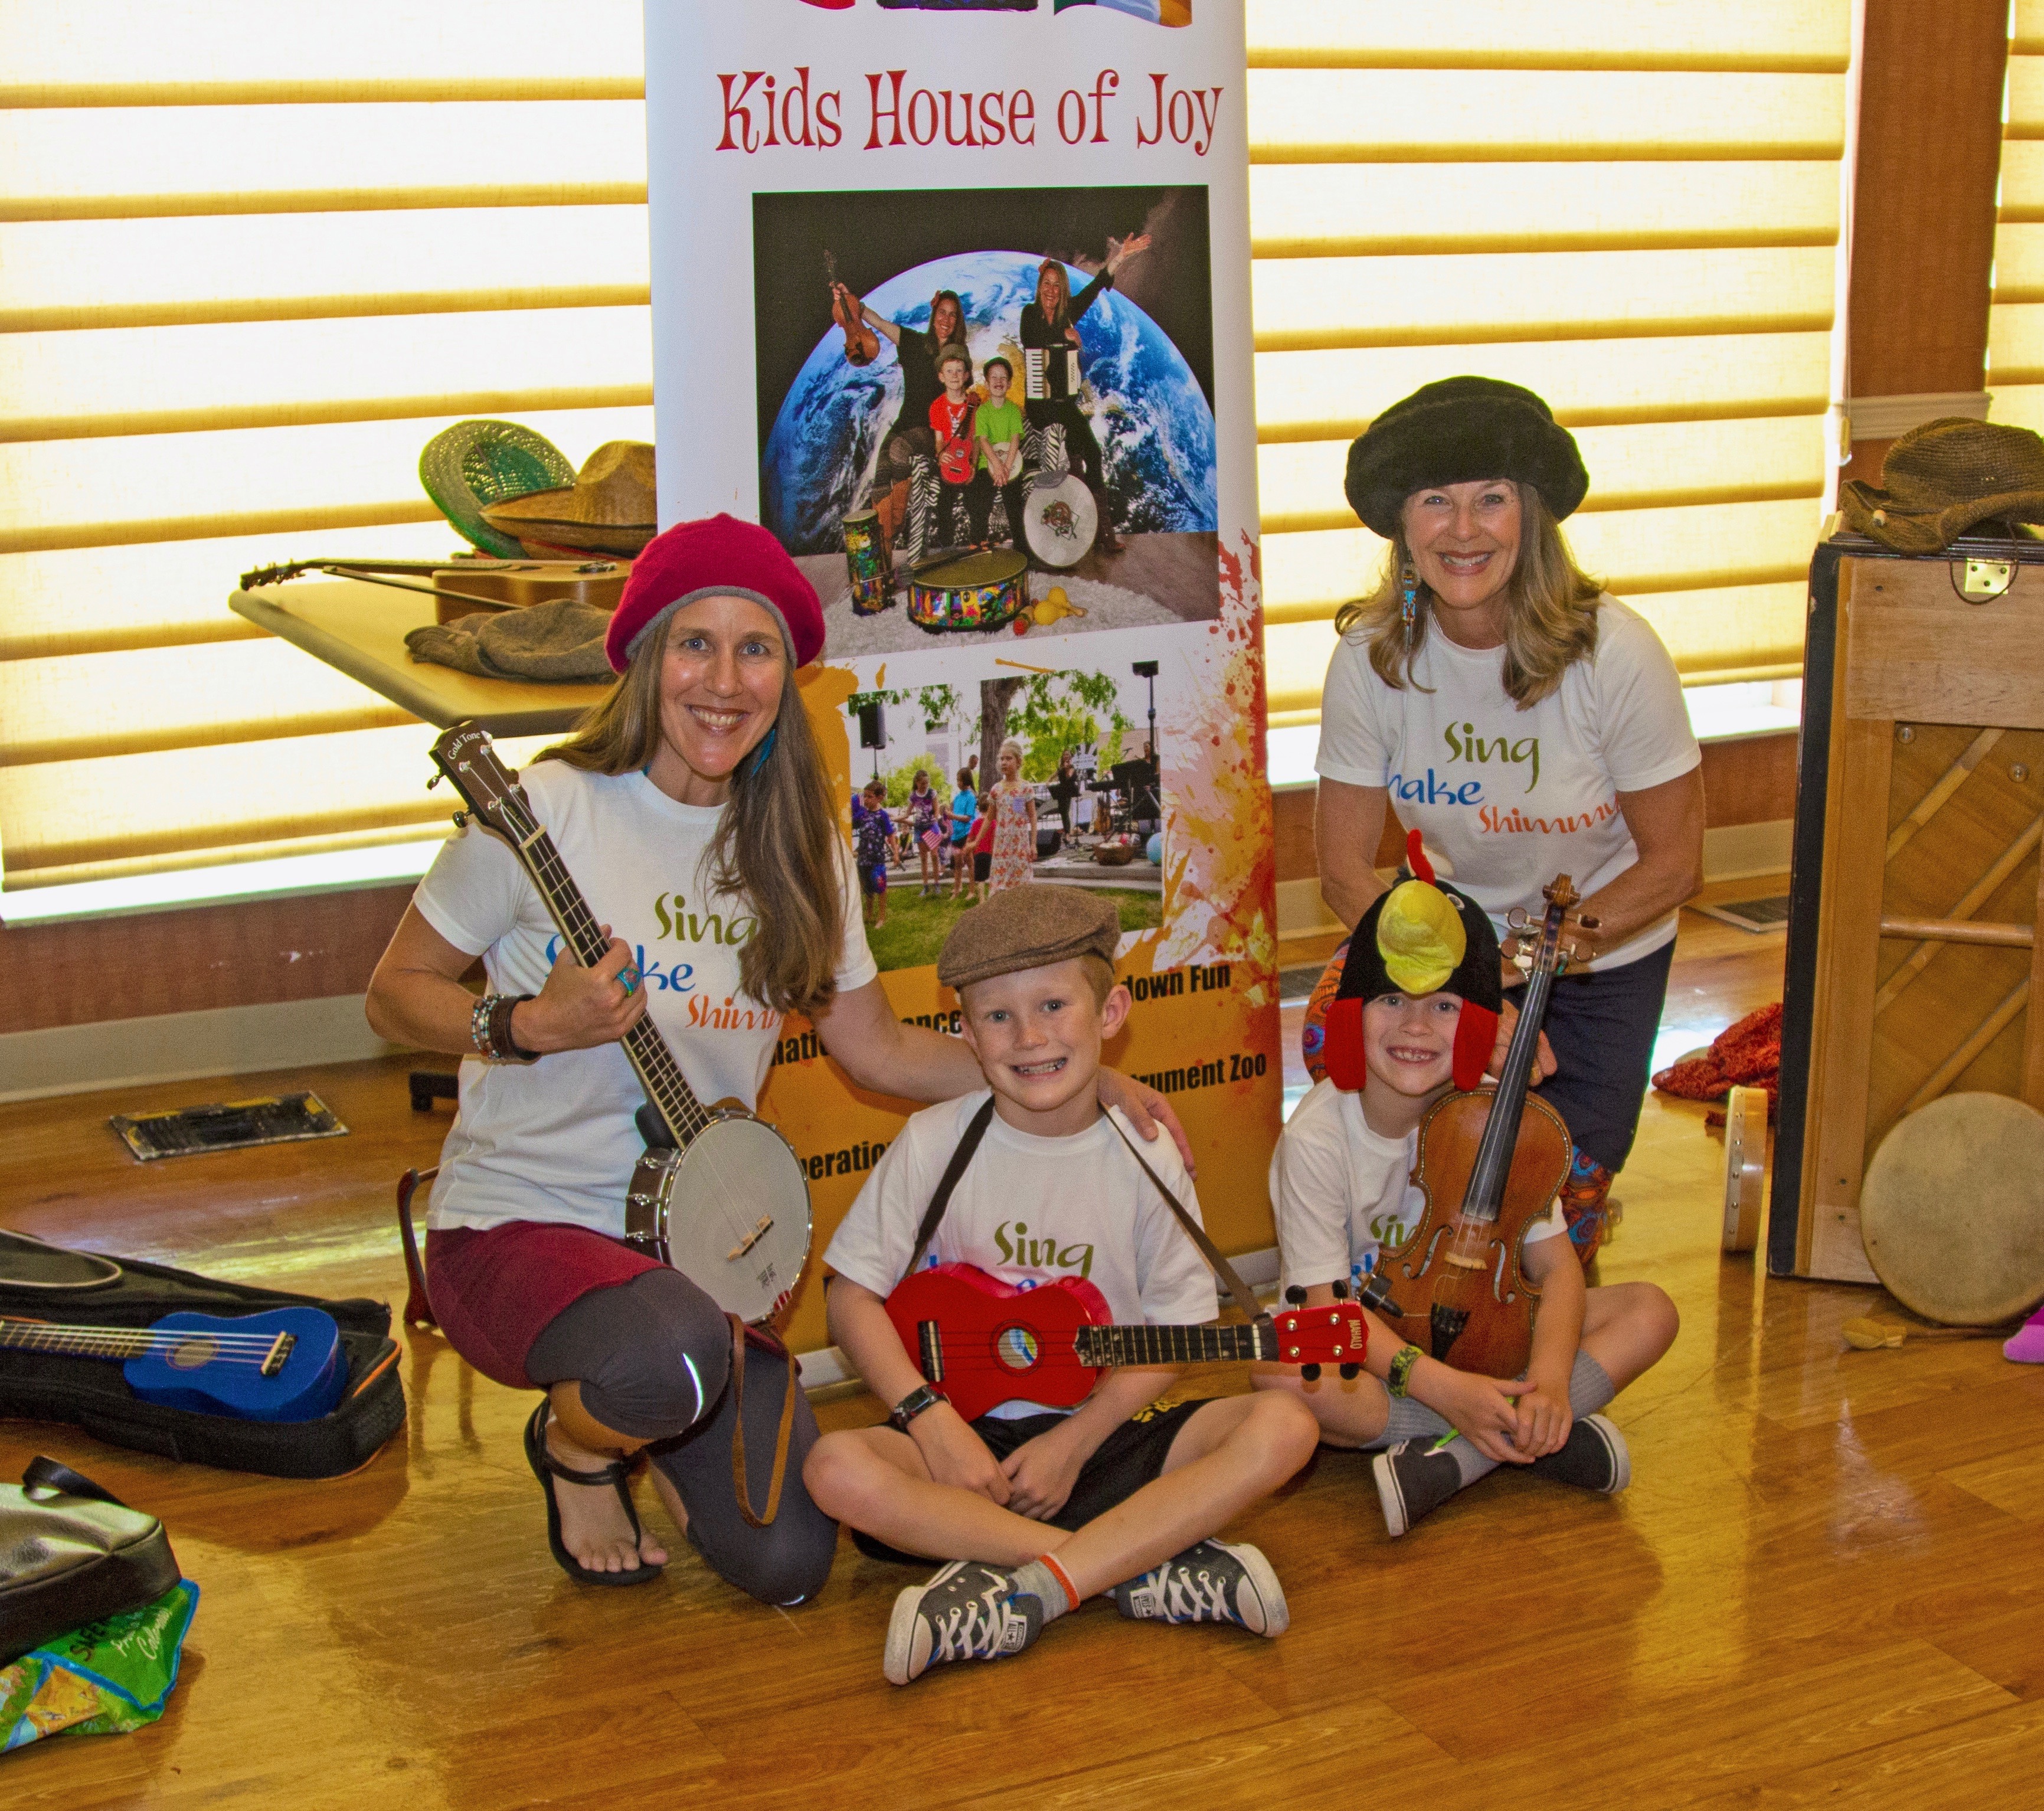 Kids House of Joy performers